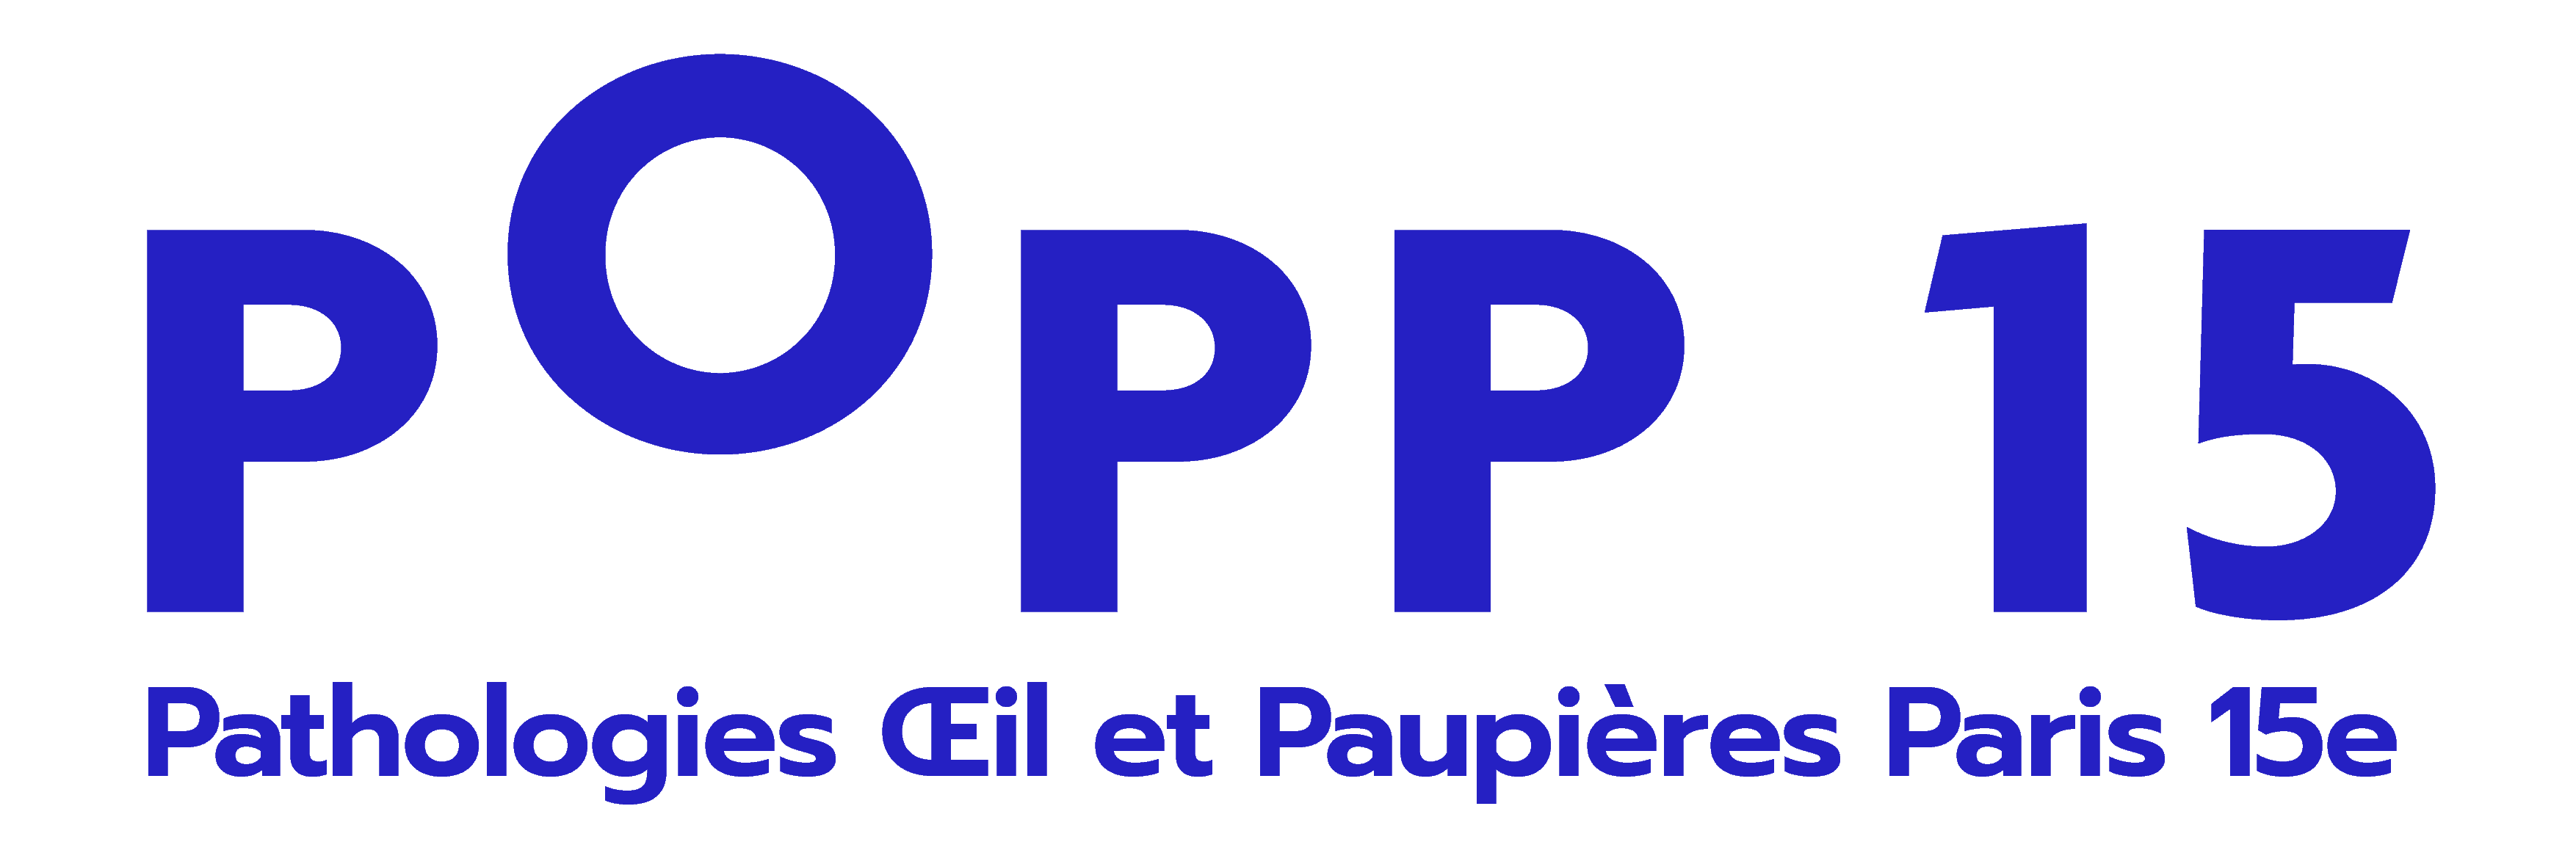 popp15 centre ophtalmologique paris pathologies oeil et paupieres paris 15